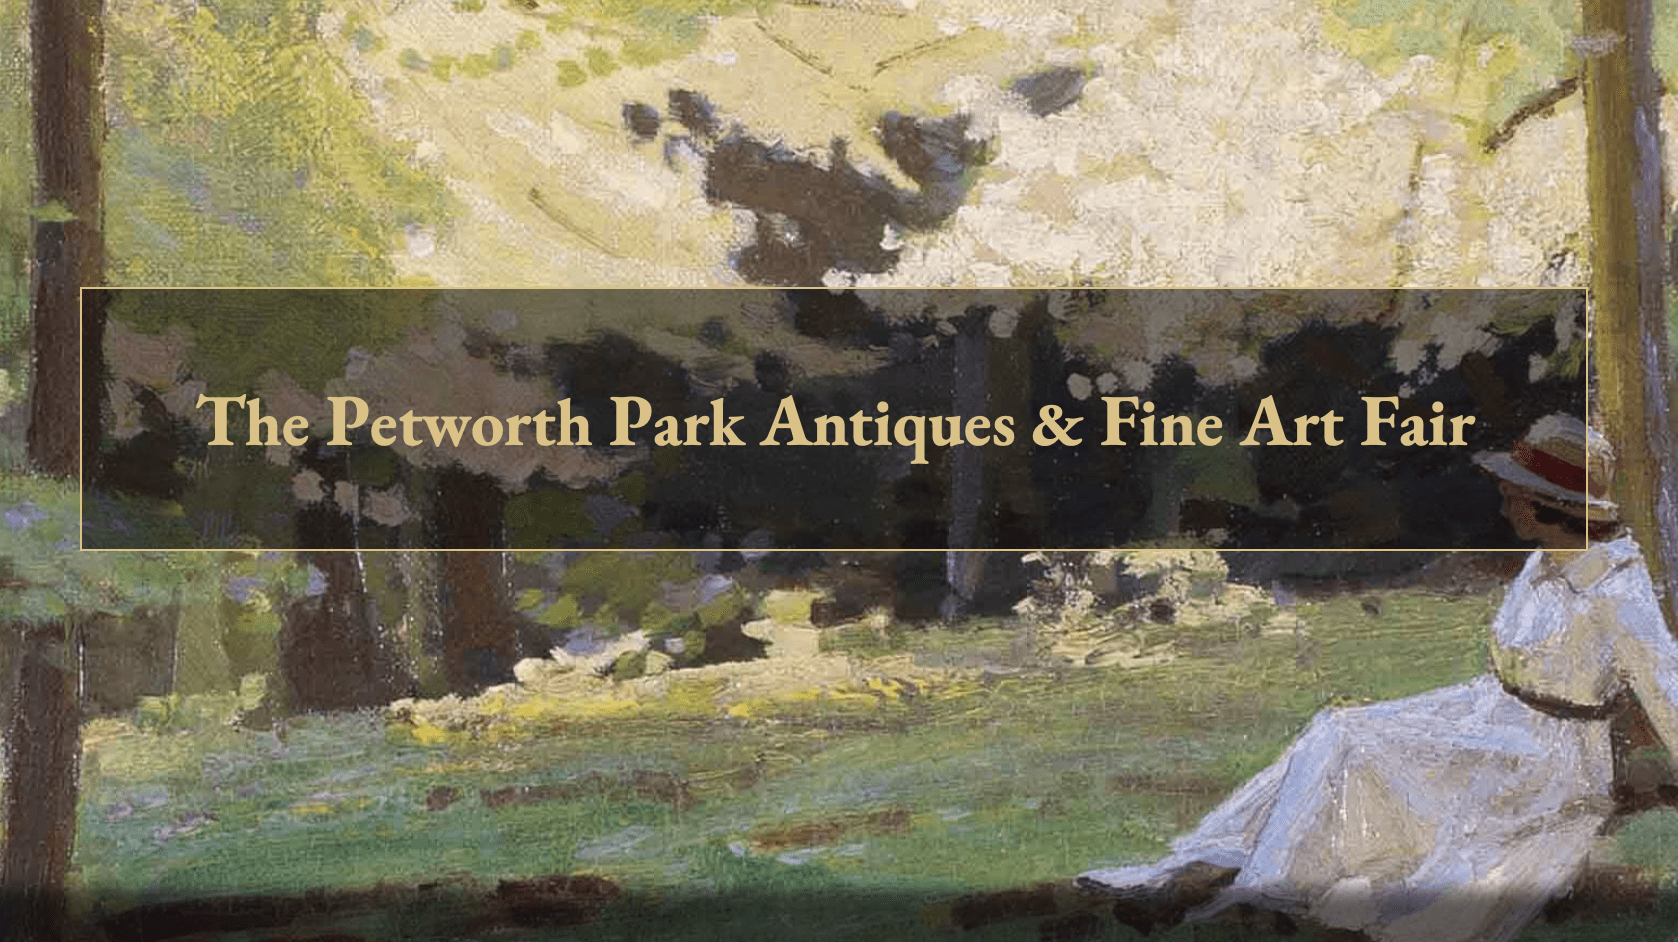 The Petworth Park Antiques & Fine Art Fair event banner